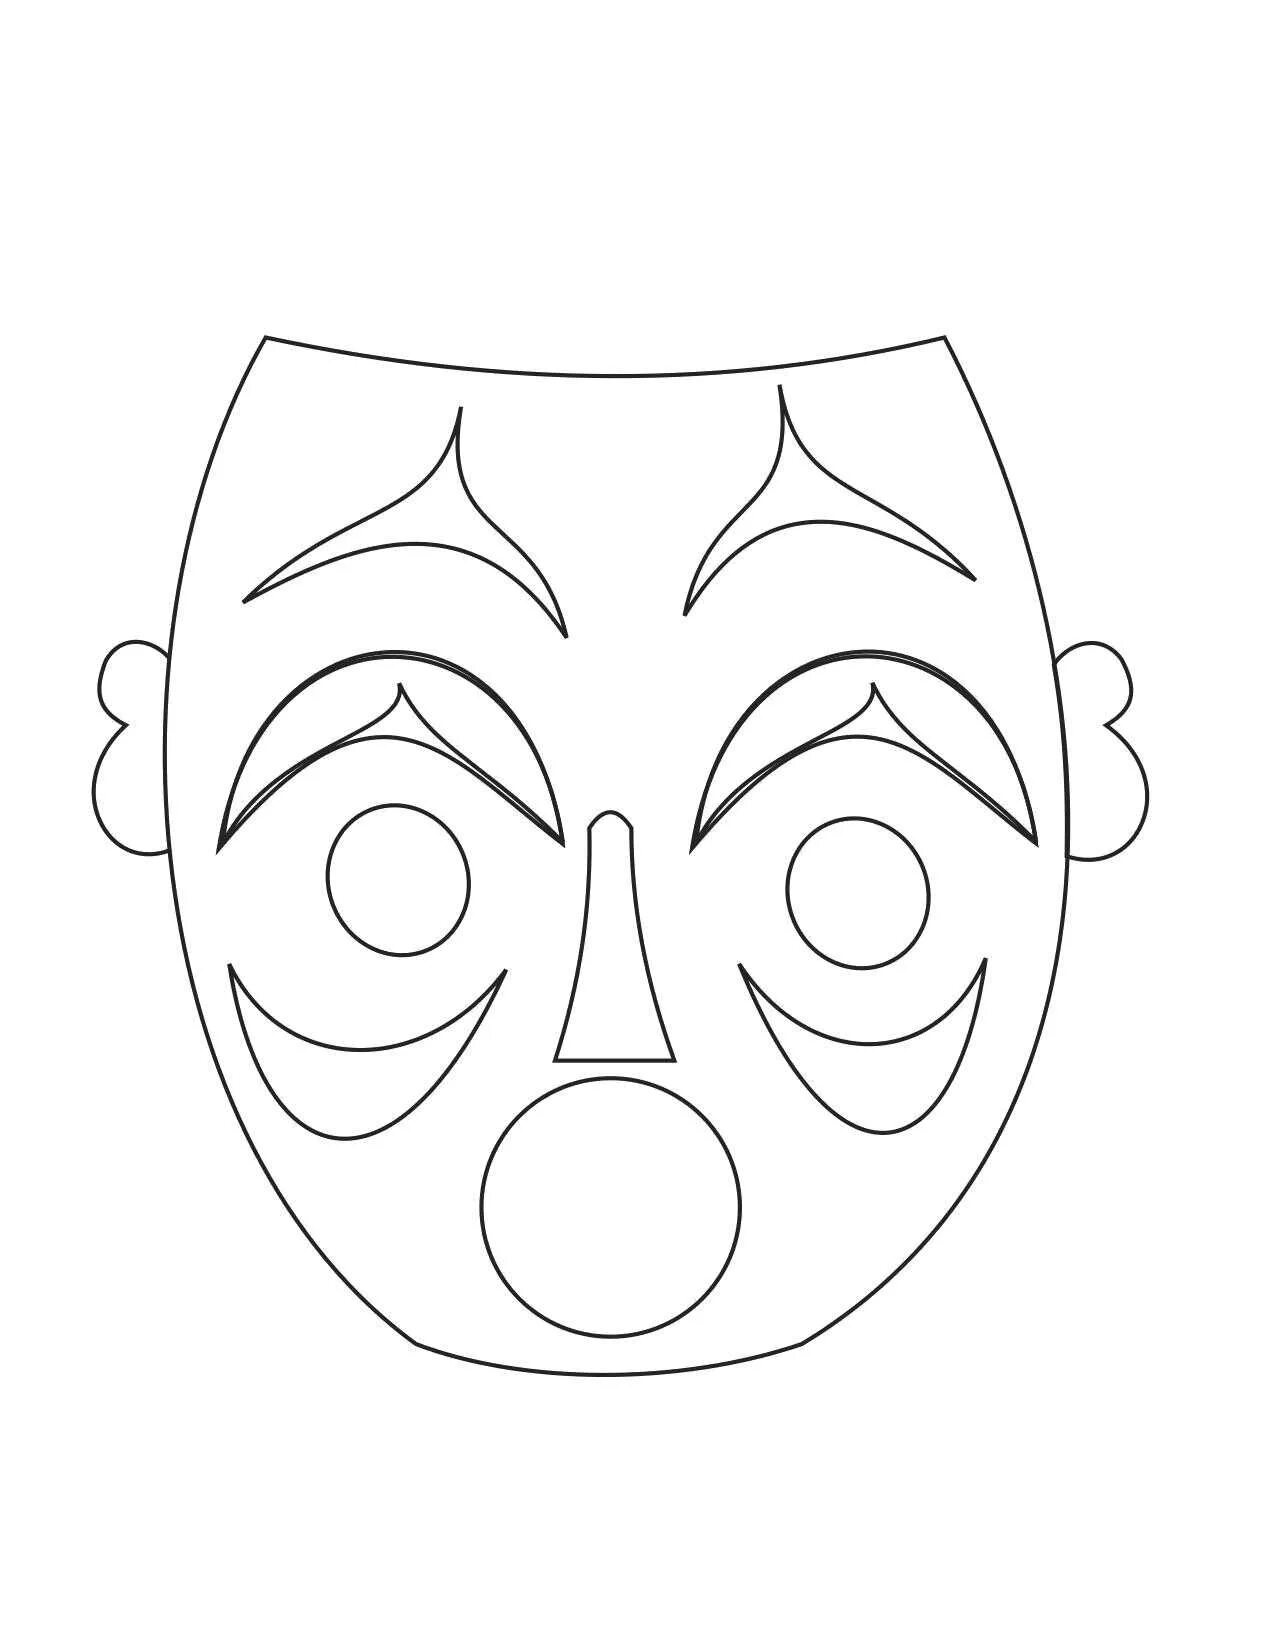 Маска раскраска. Трафареты театральных масок для лица. Маска для распечатки. Шаблоны масок для театра. Косметика распечатать маски